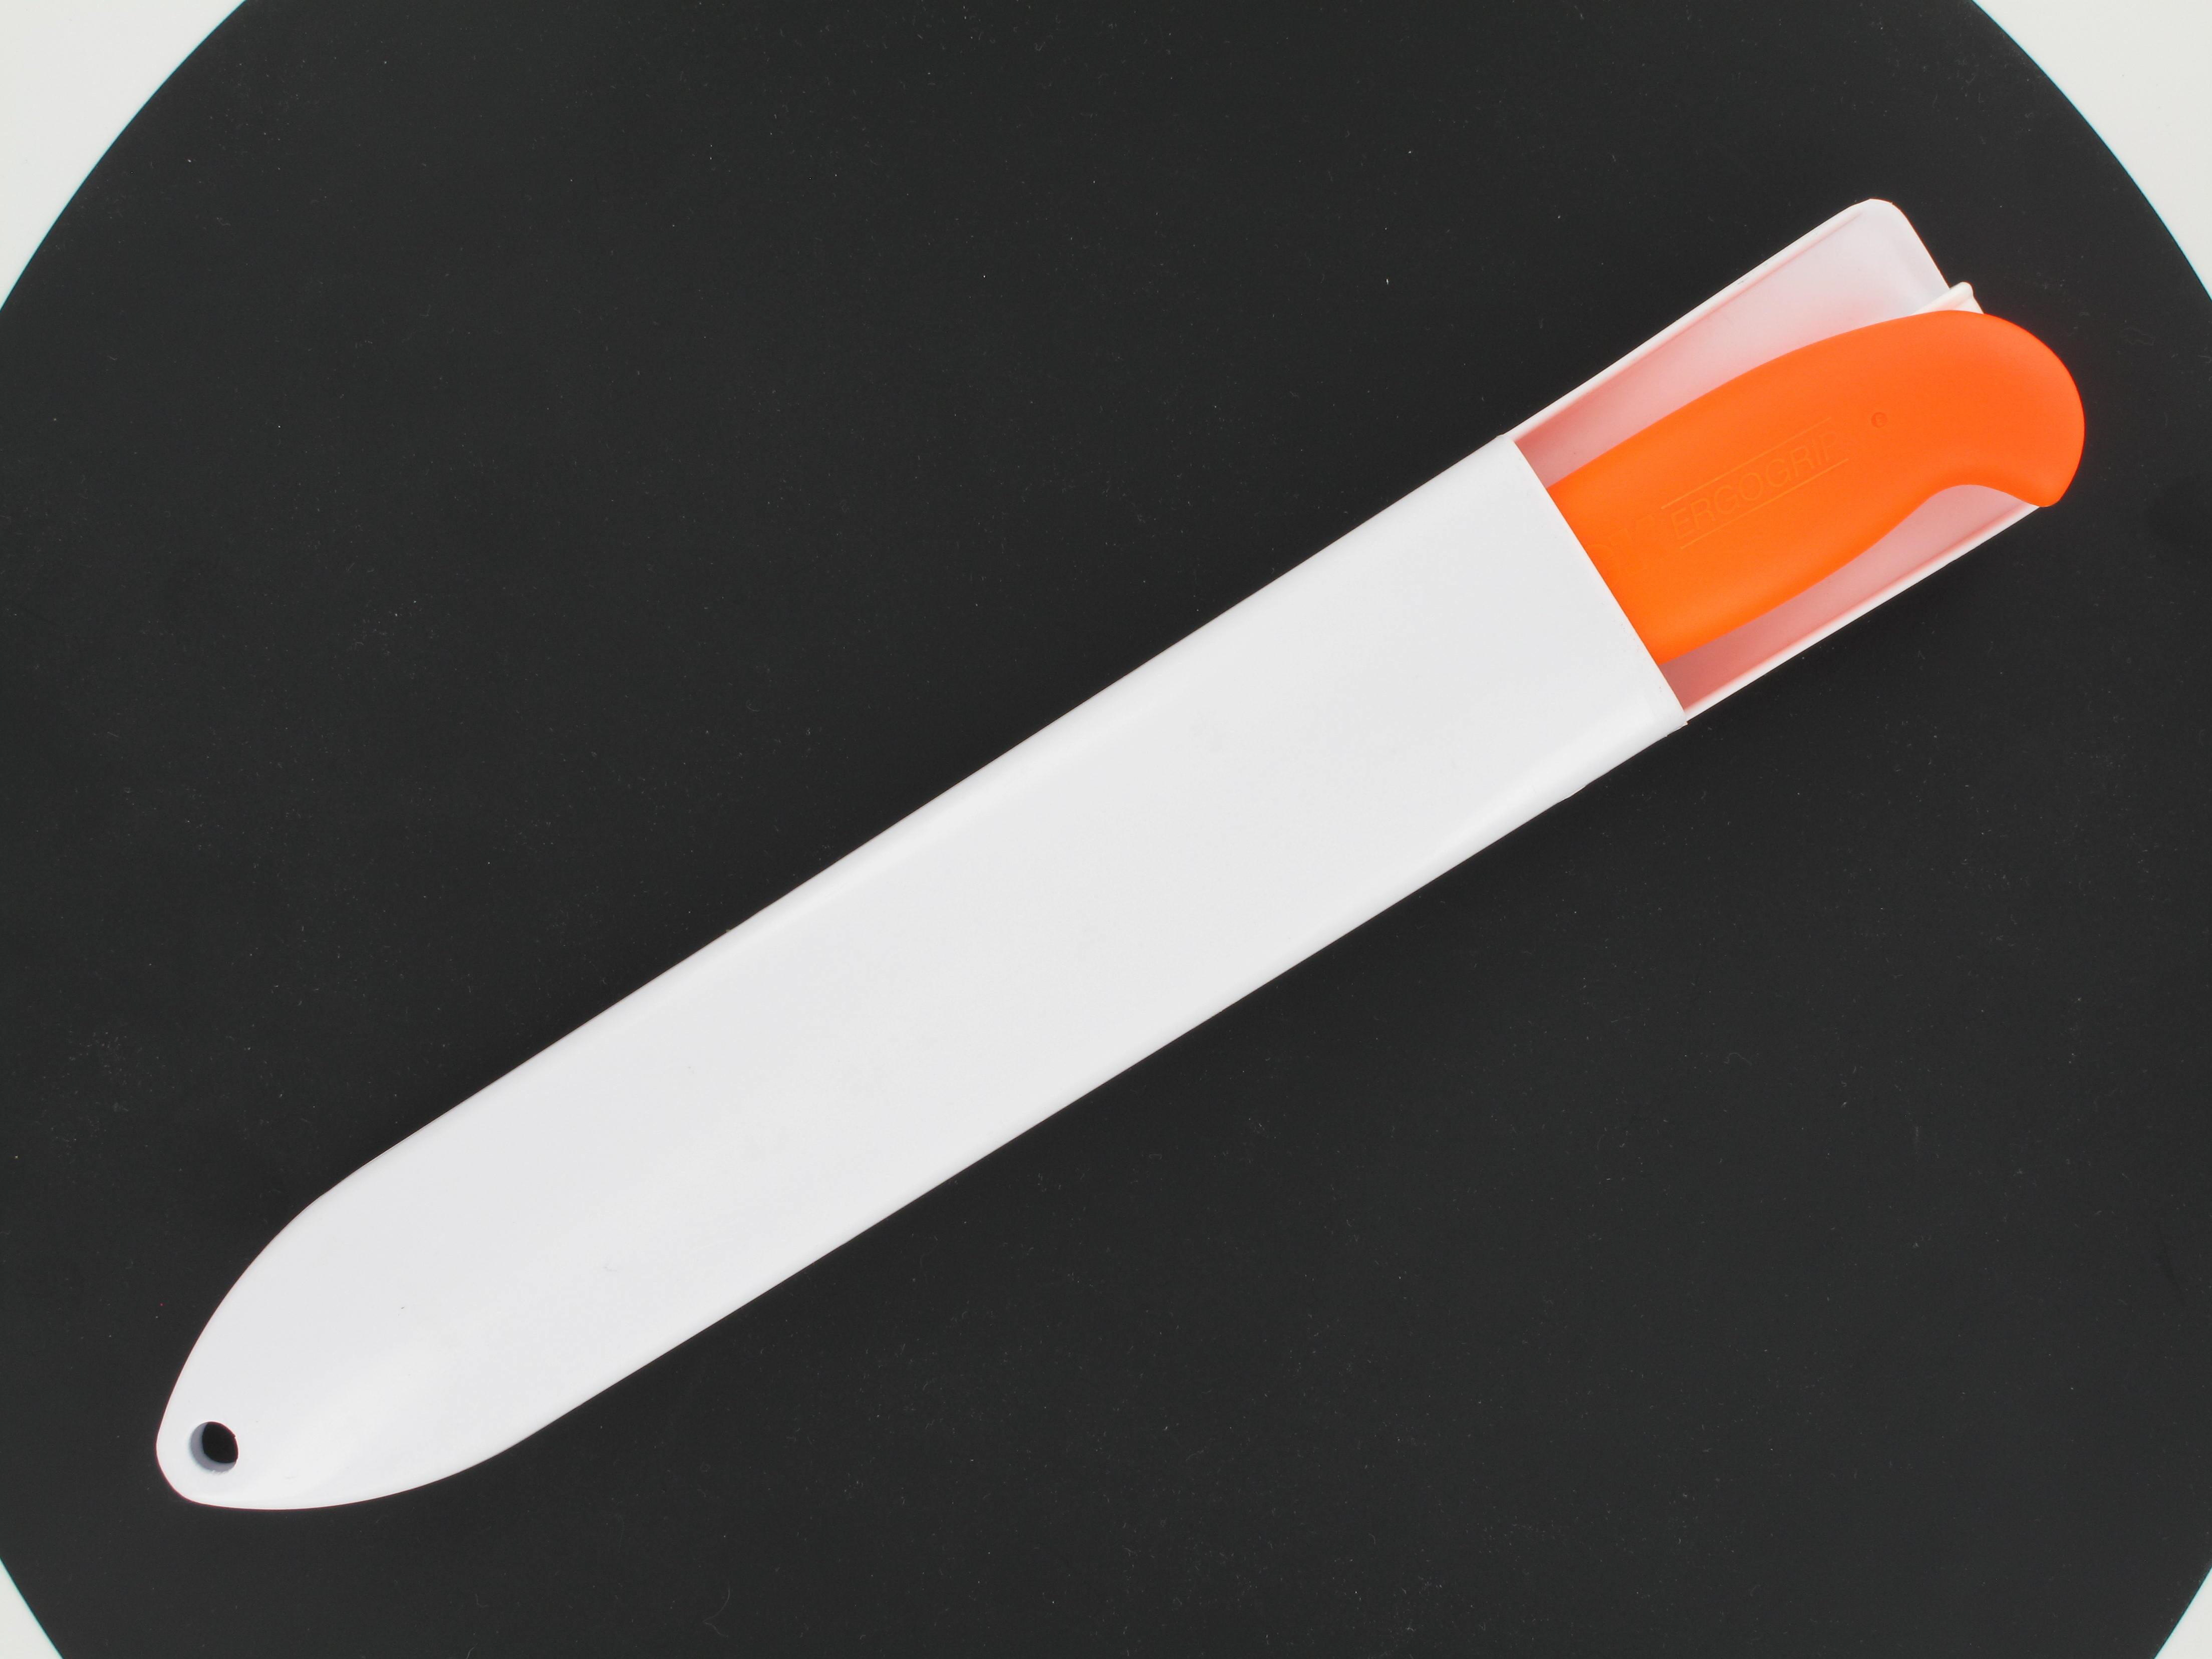 Messerscheide weiß für ein Messer